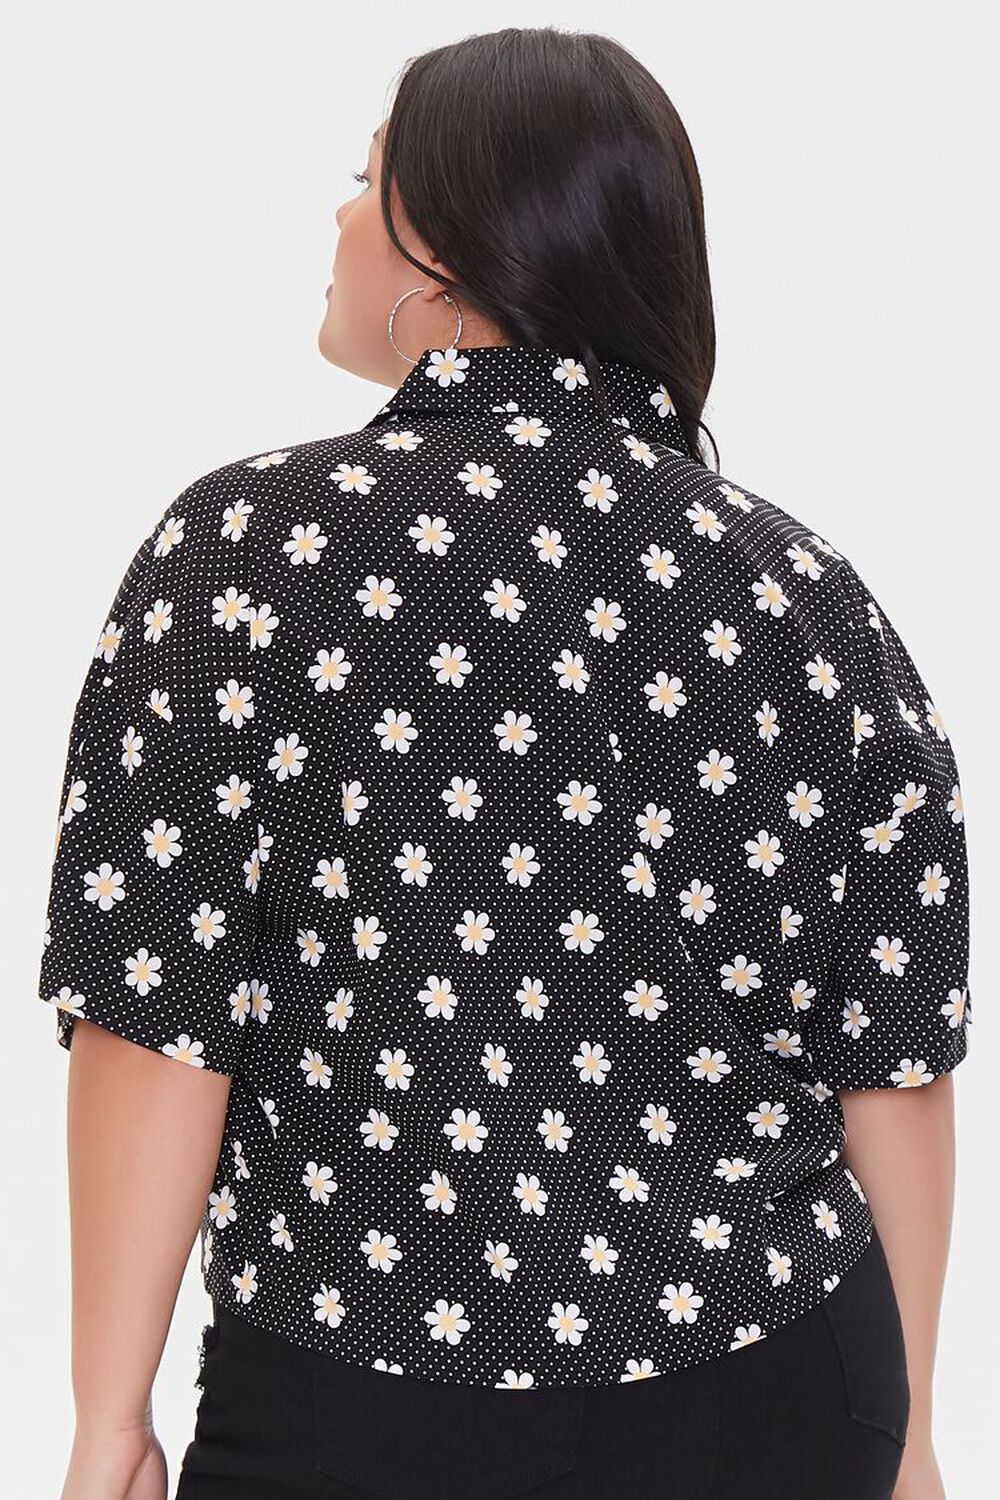 Plus Size Floral Print Shirt, image 3